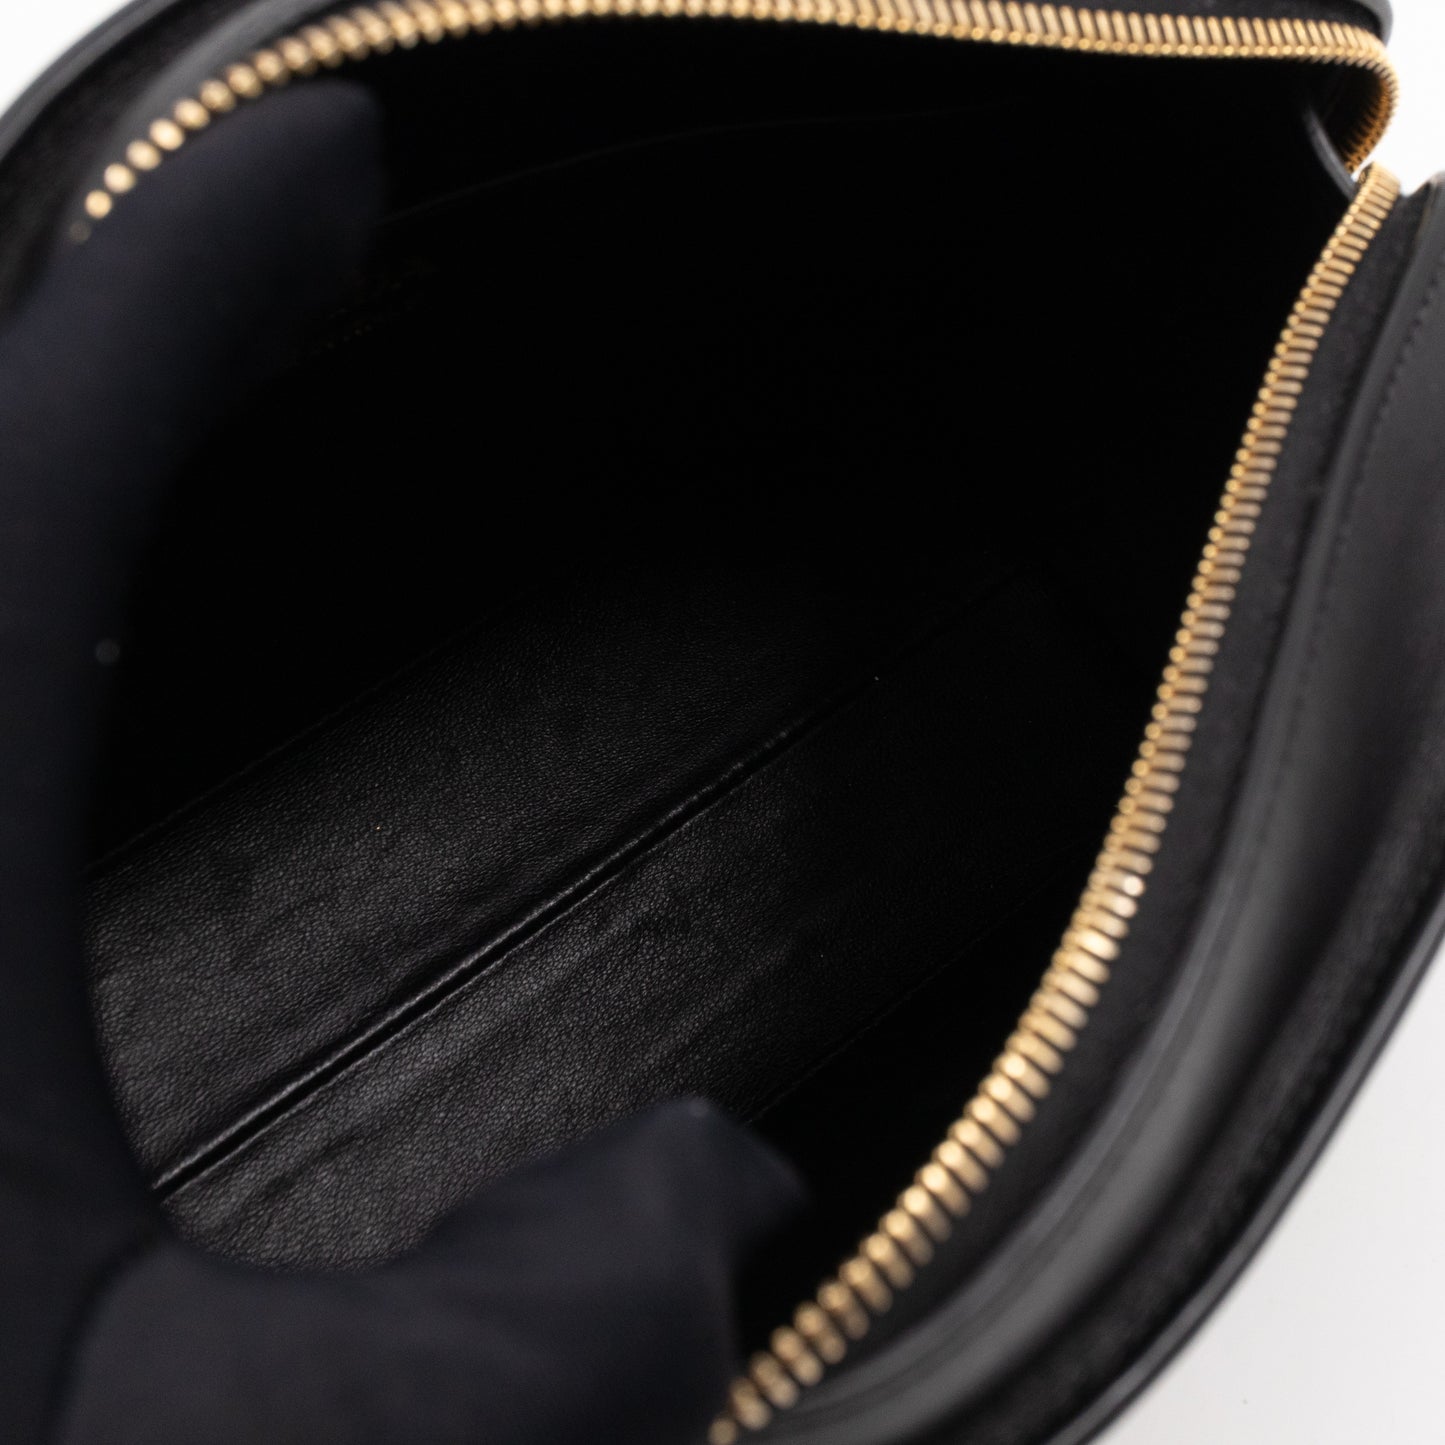 Esplanade Shoulder Bag Palissandro Brown & Noir Leather